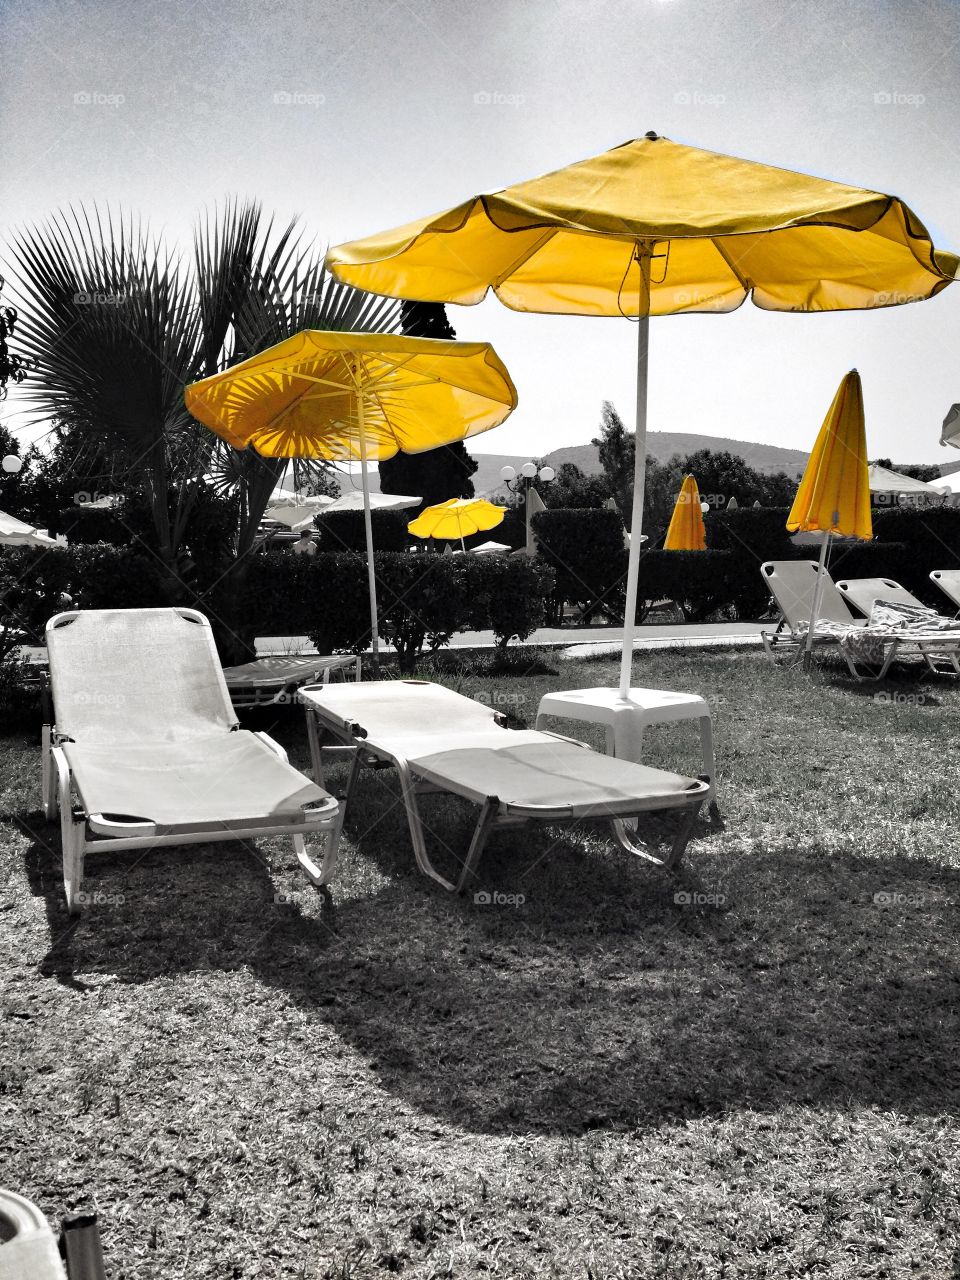 yellow umbrellas